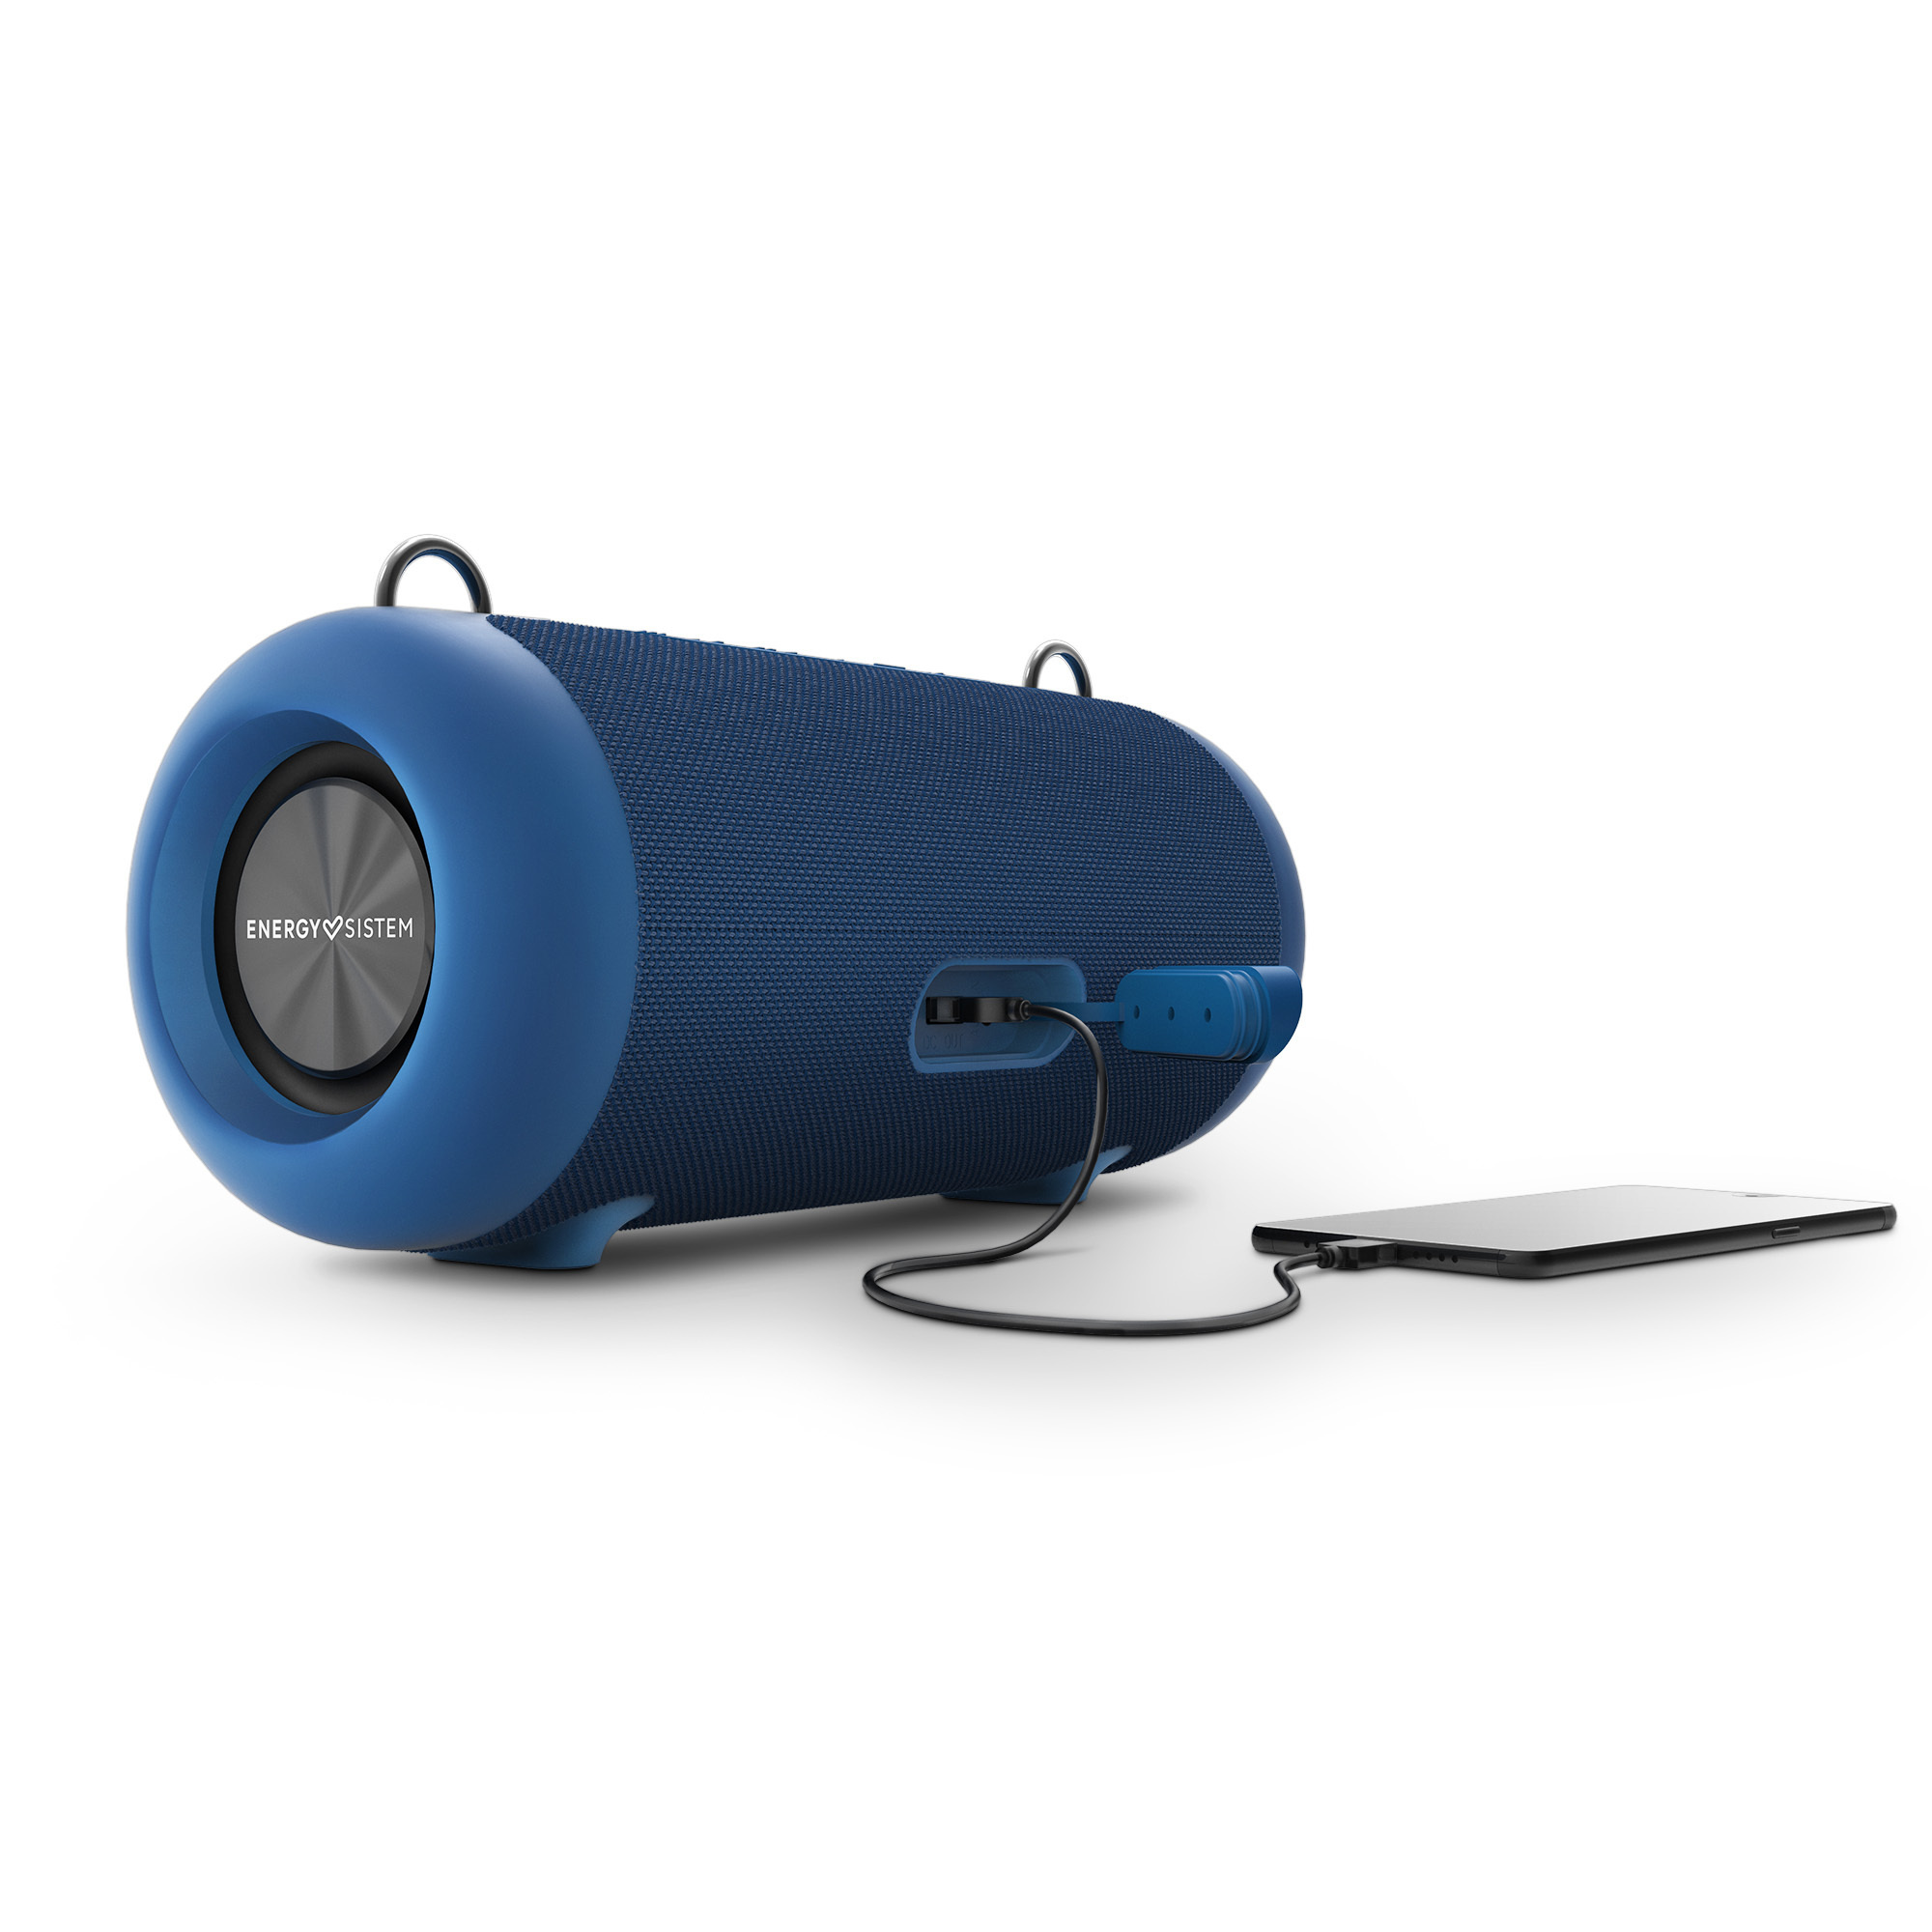 Enceinte Energy Sistem Urban Box 6 - 40W - TWS - Bluetooth 5.0 - Résistant à l'eau - Couleur Bleu